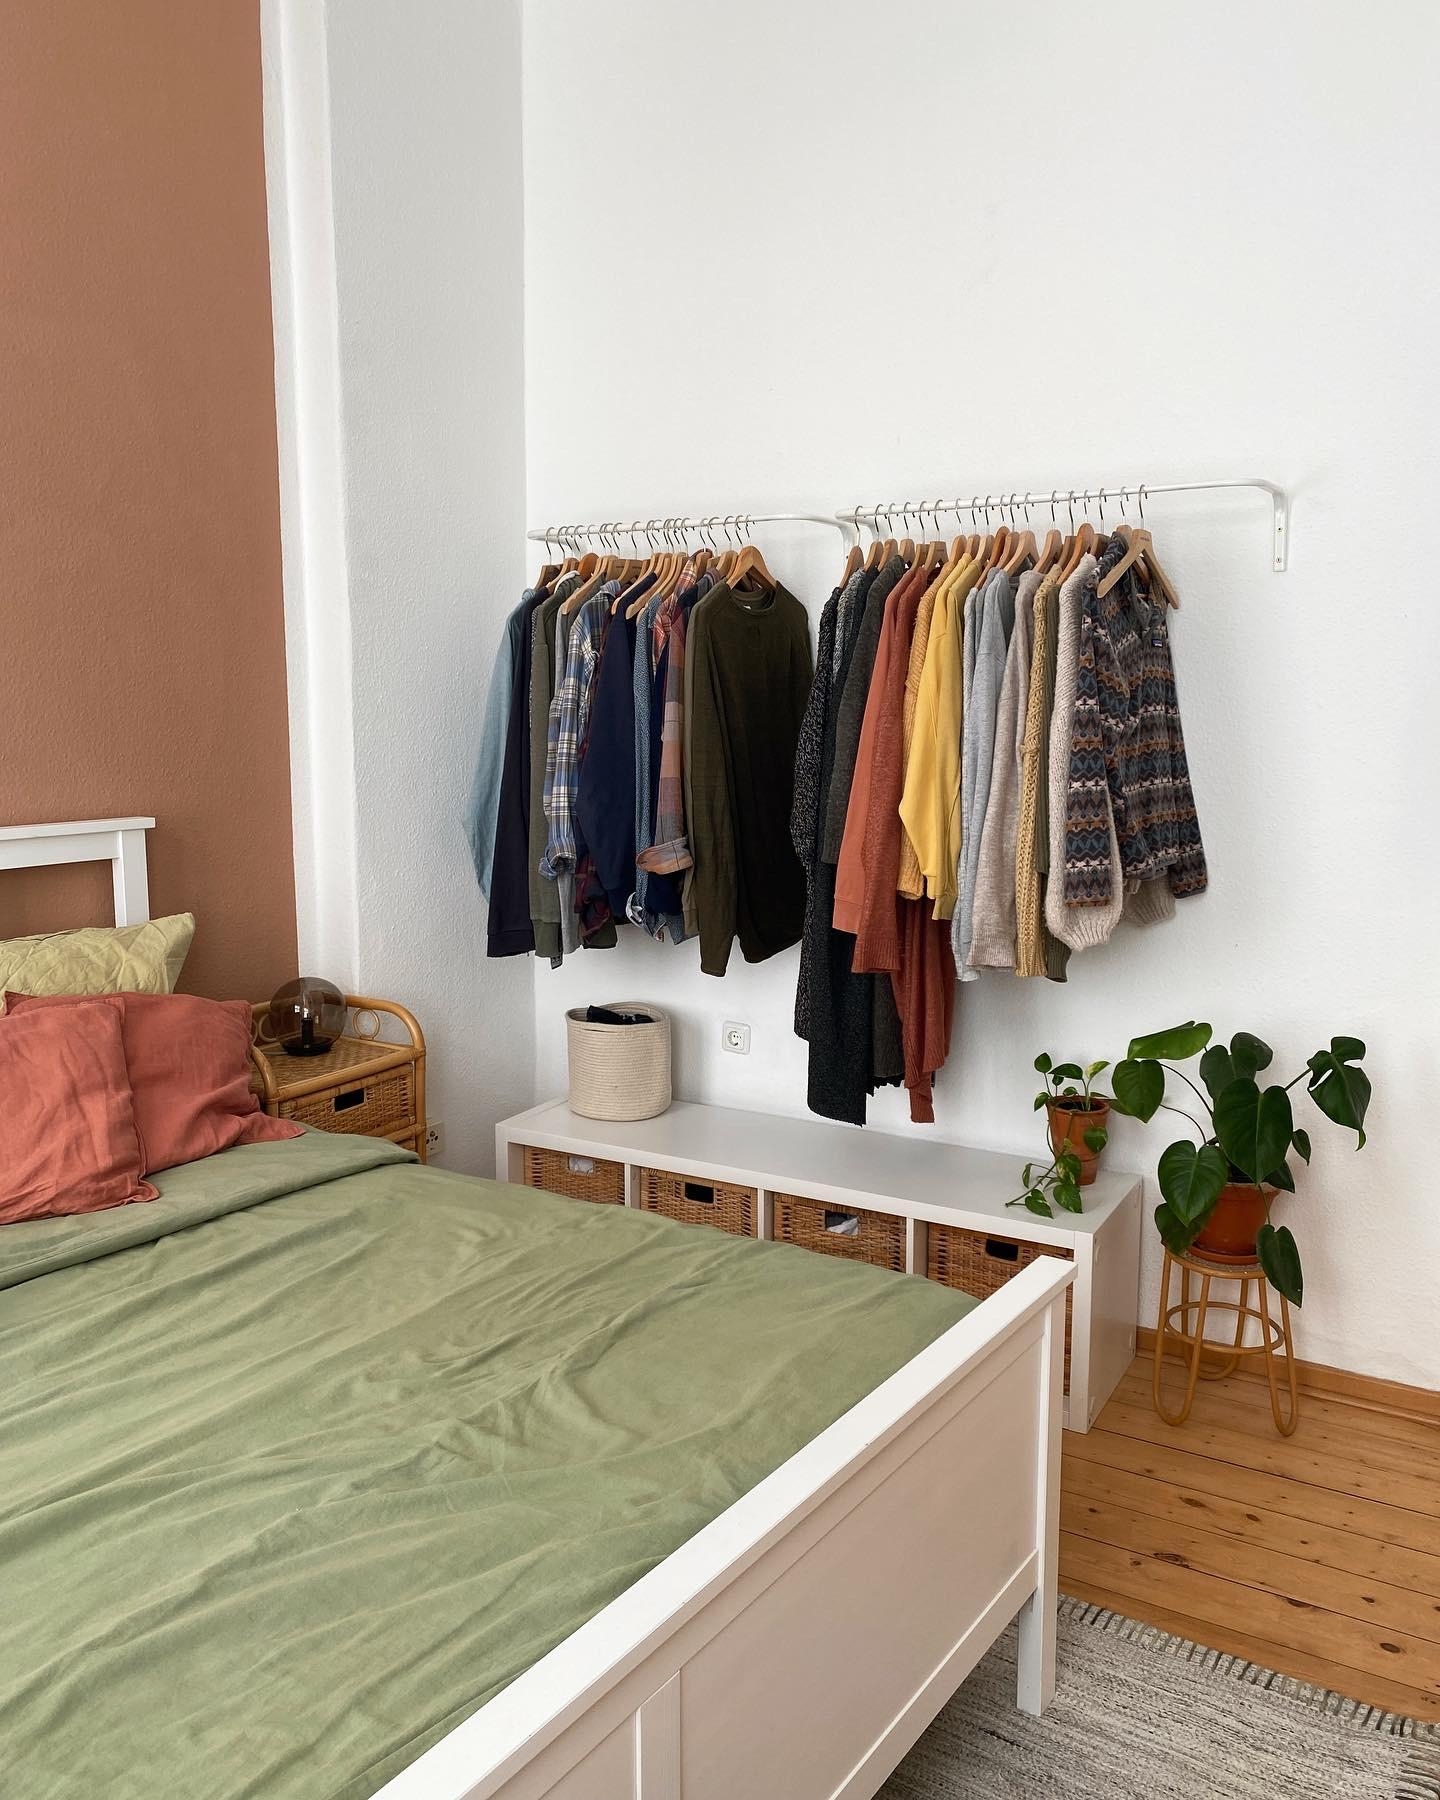 Mal wieder ein Bild aus dem Schlafzimmer 🥰
#schlafzimmer #altbau #boho #wandfarbe #rattan #offenerkleiderschrank #kleiderstange #ikea